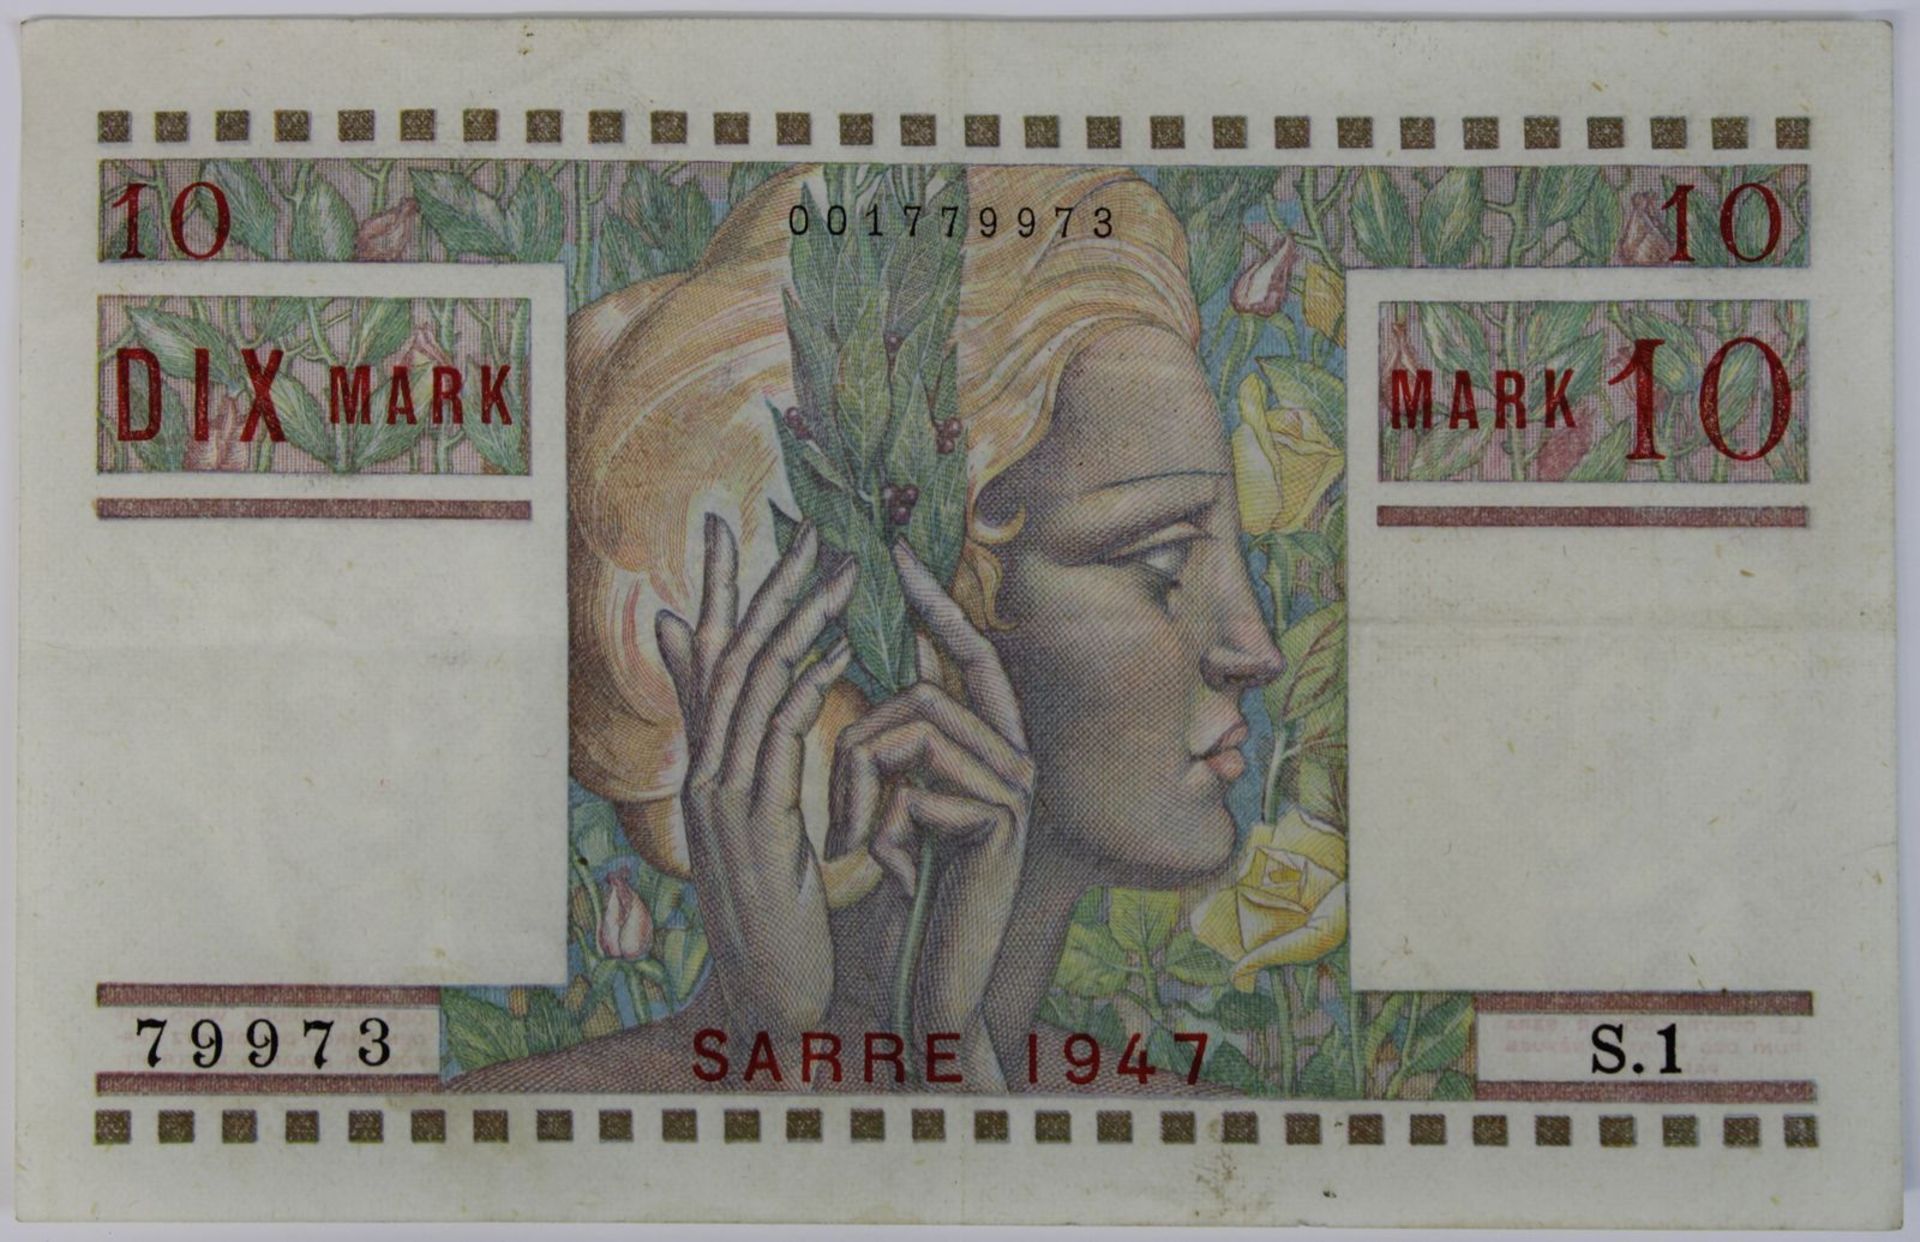 Banknote zu 10 Mark, Saarland / Sarre 1947, in deutscher und französischer Sprache, gute